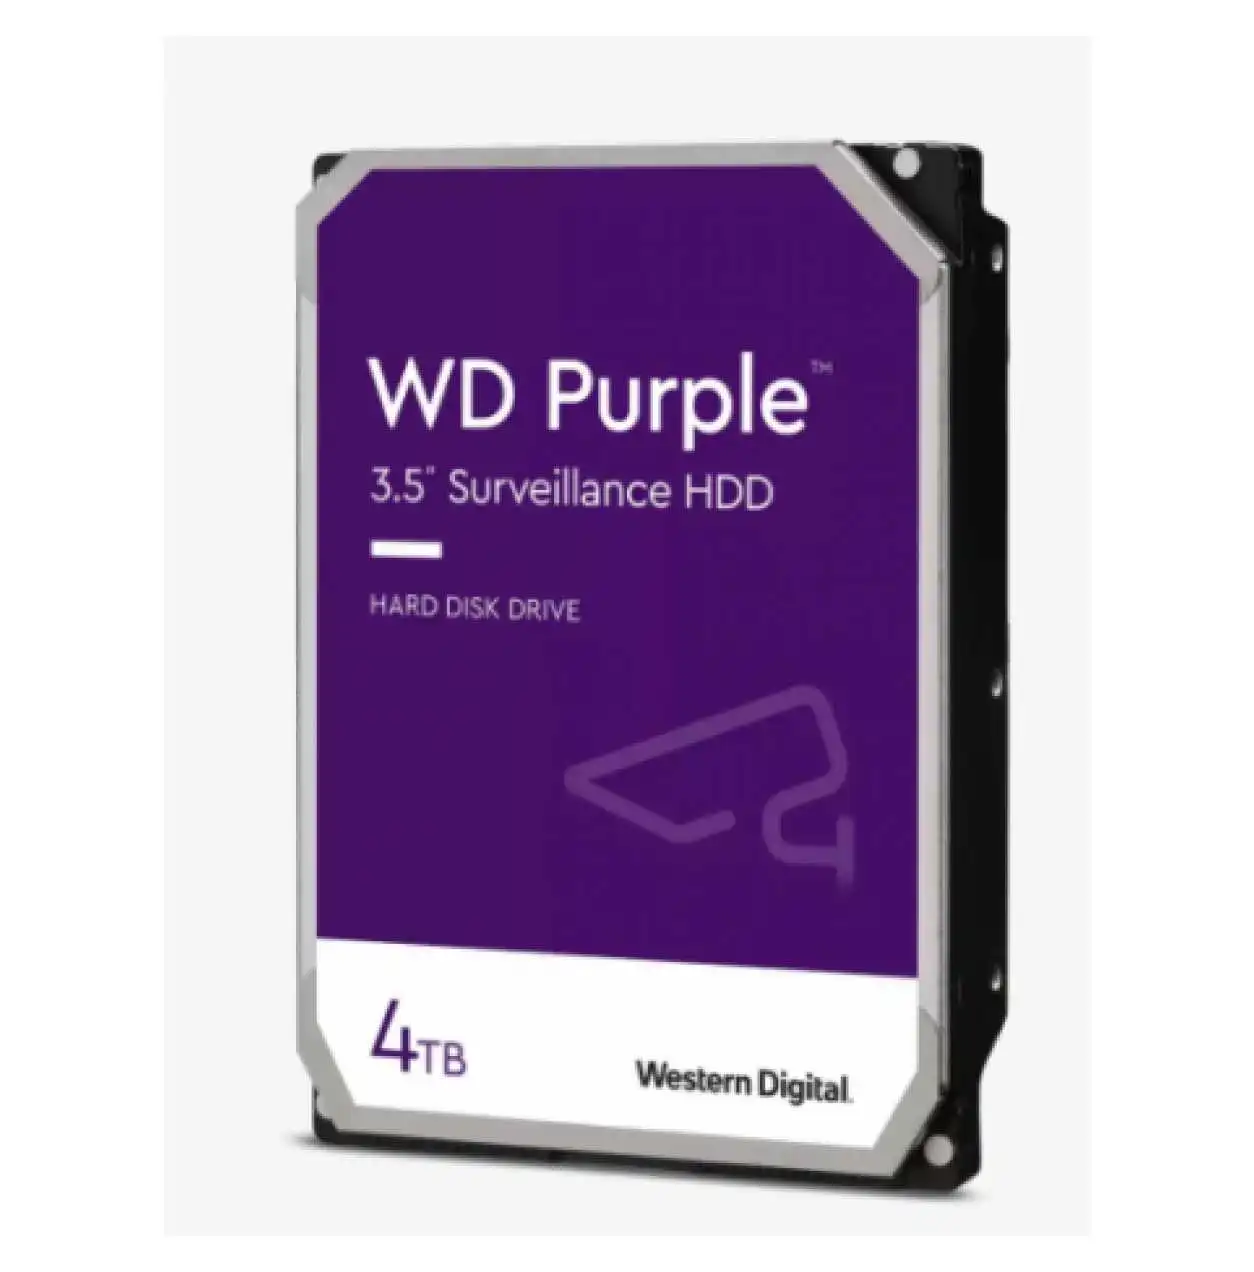 4TB WD Purple SATA 6Gb/s 64MB DV 7x24 WD43PURZ